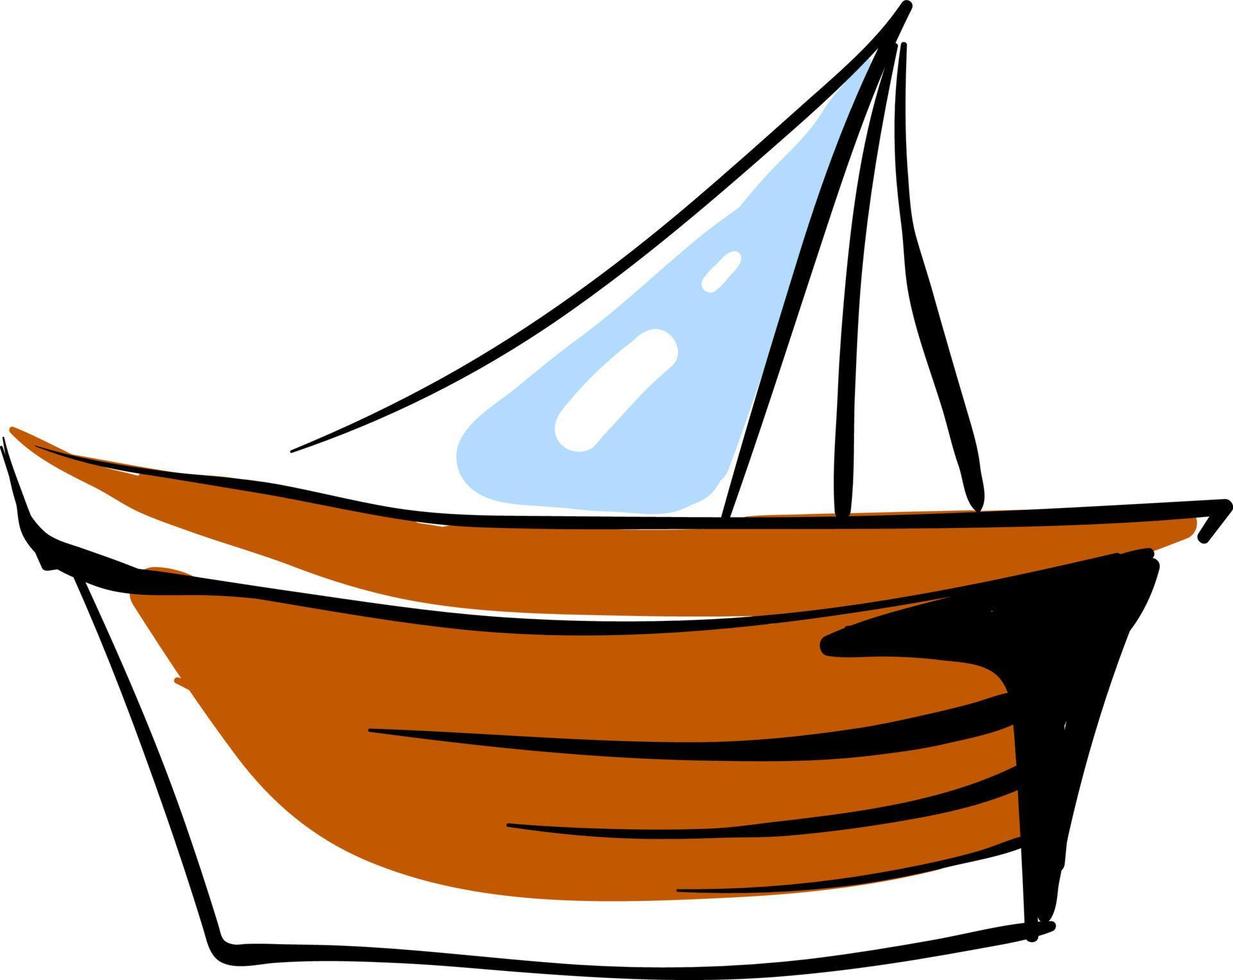 pequeño bote de madera, ilustración, vector sobre fondo blanco.